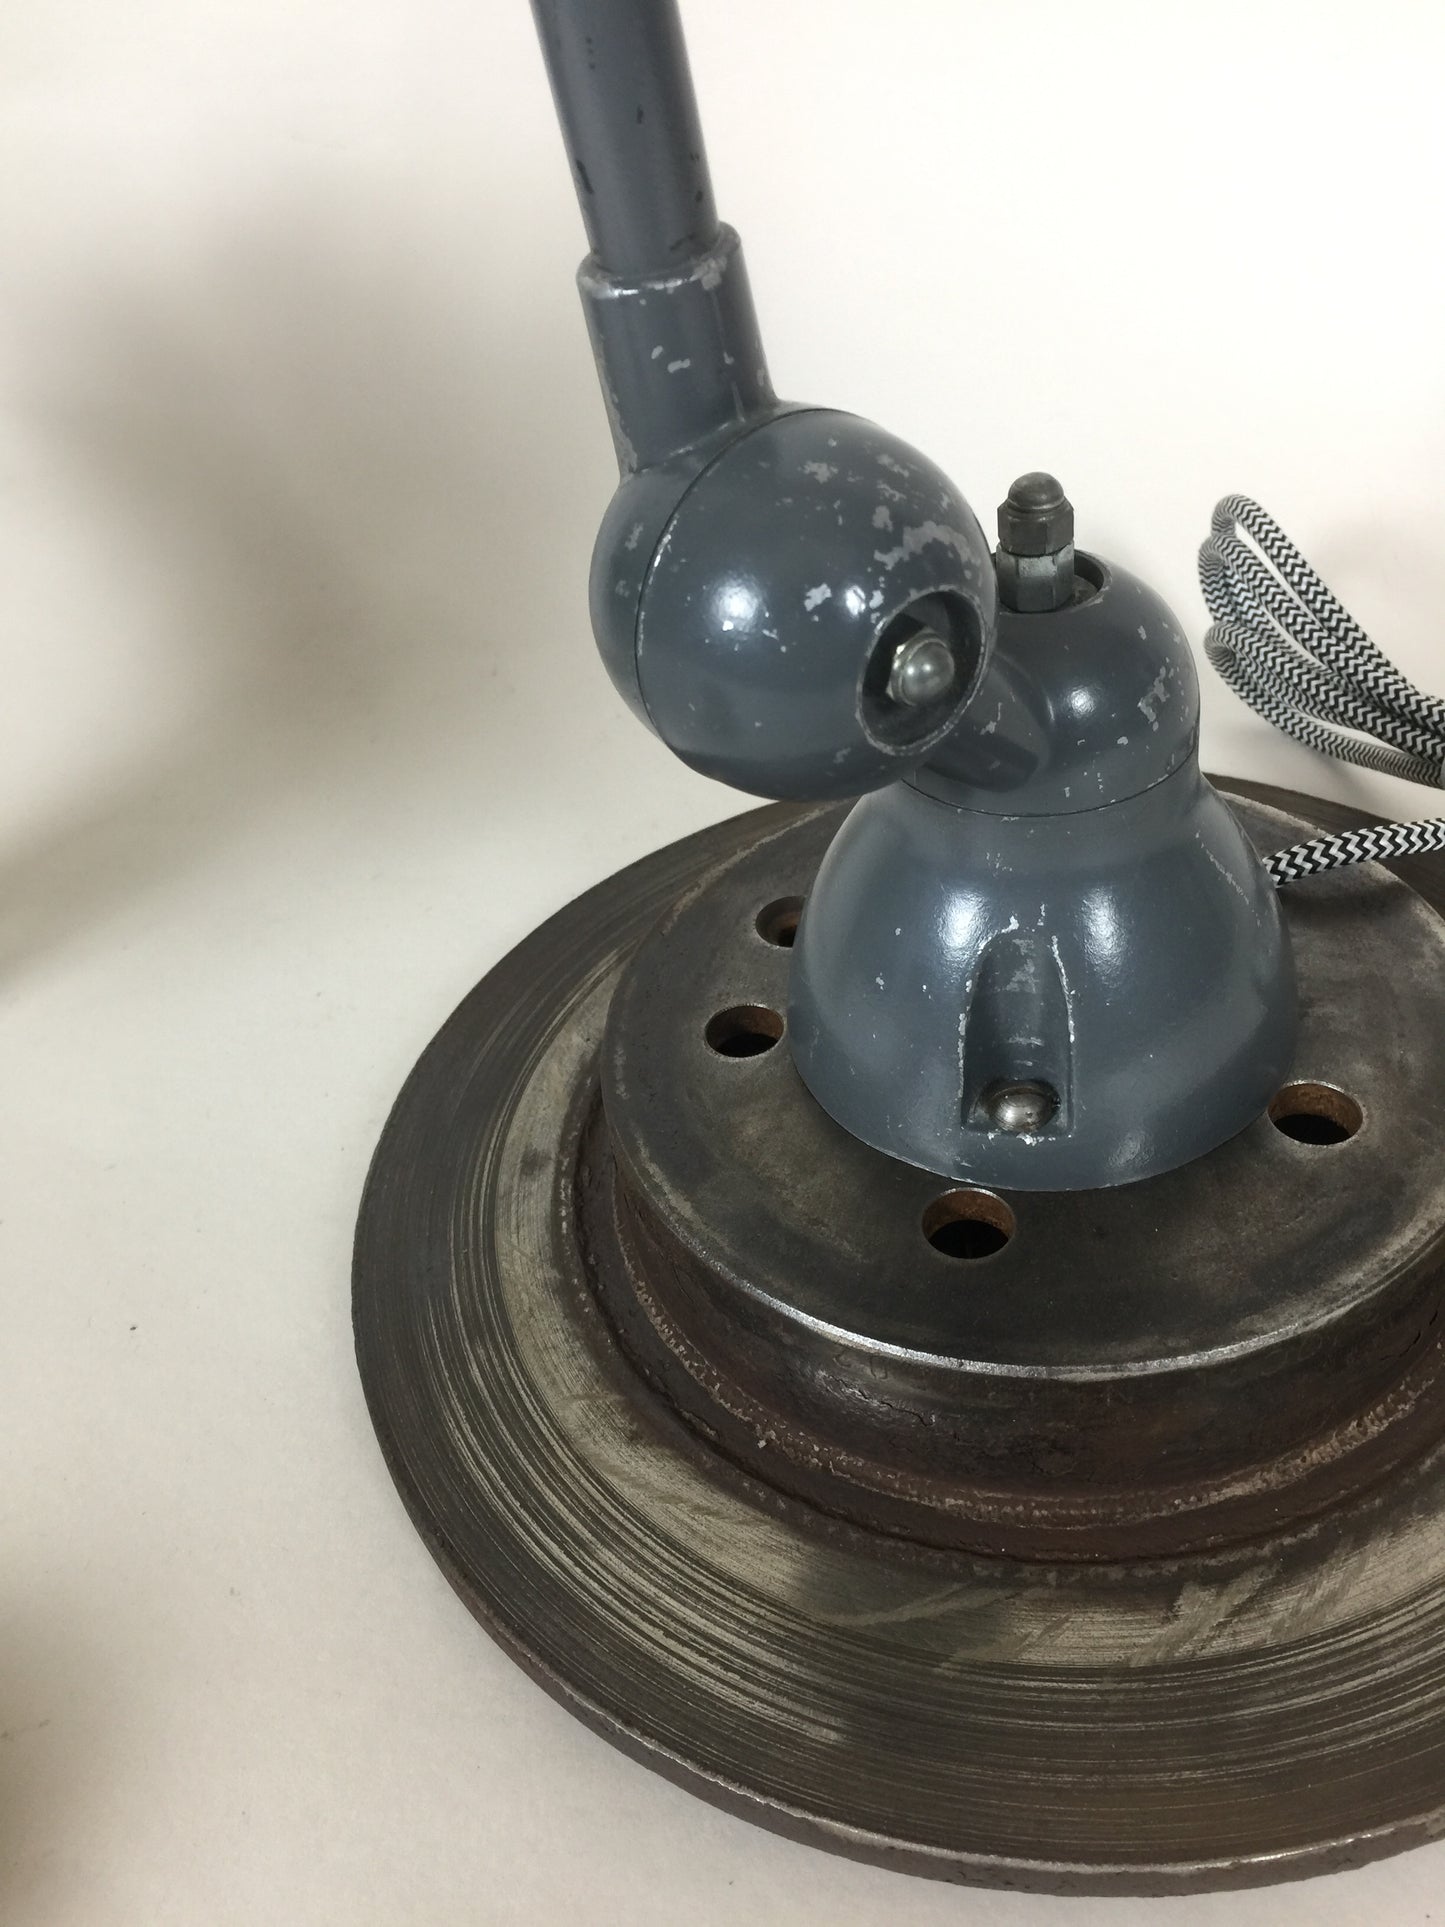 Jieldé bordslampa i grått med strömbrytare